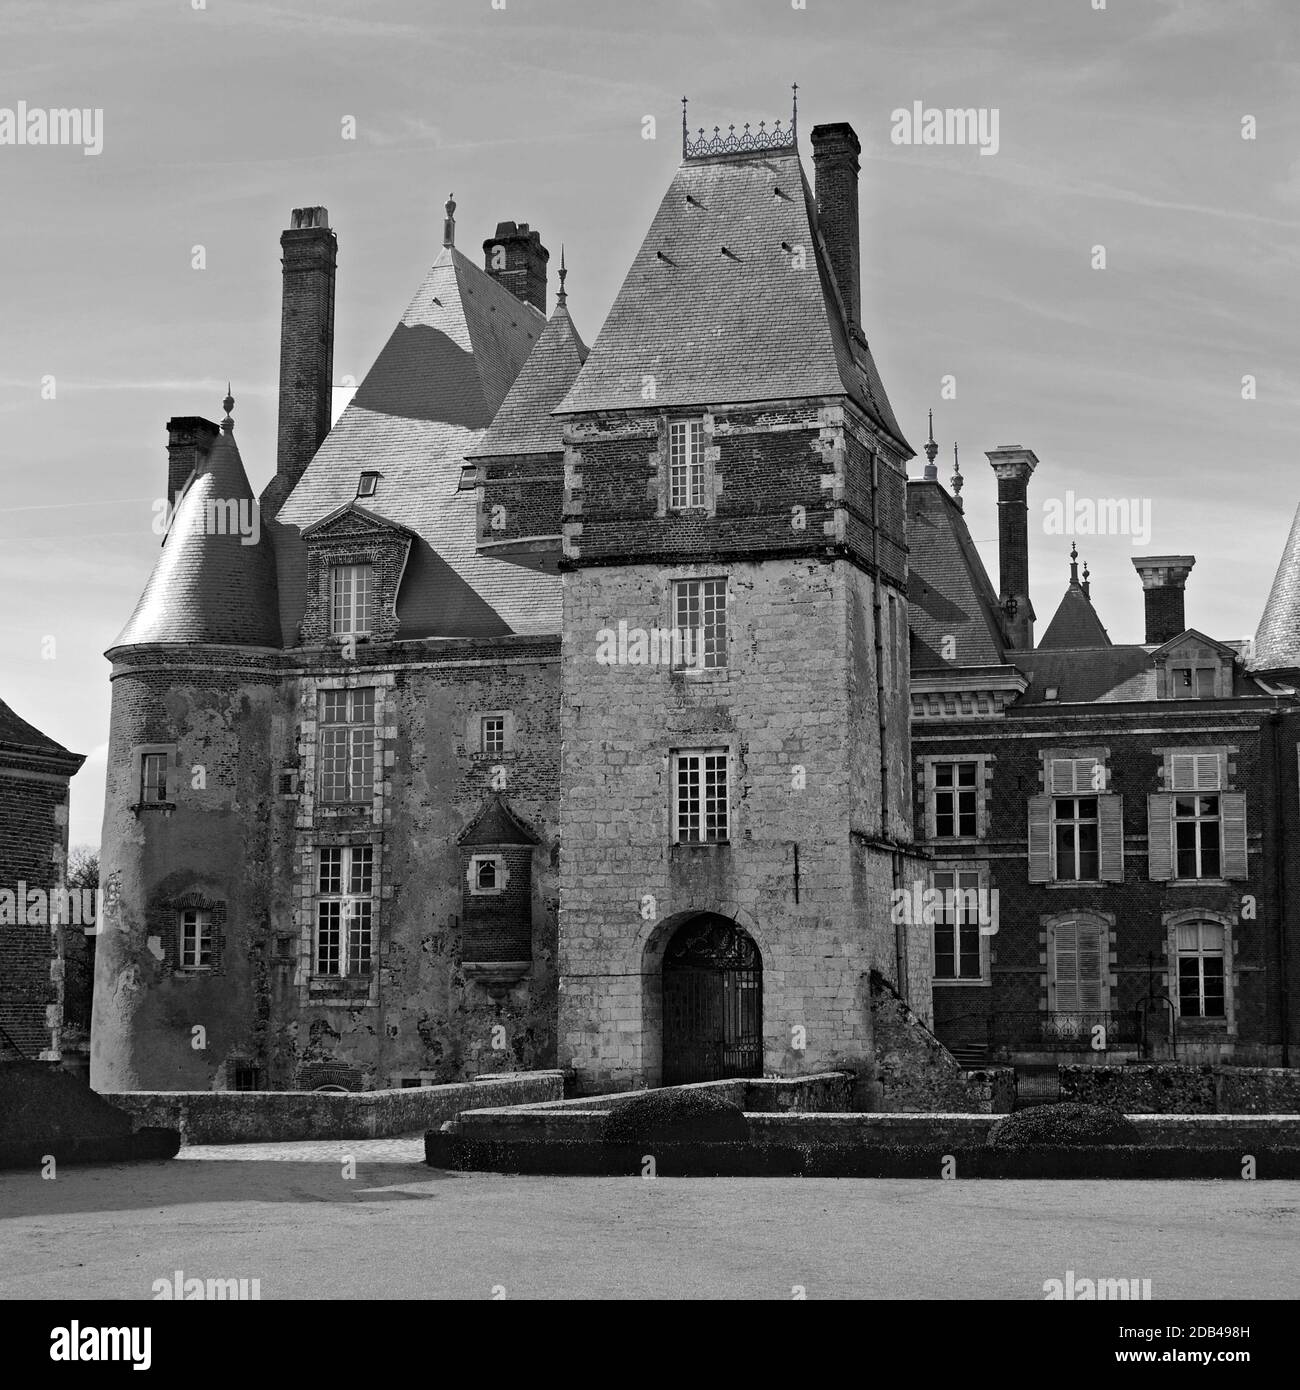 Château de La Bussiére (The Fisherman's Castle) in the Loire Valley, France Stock Photo